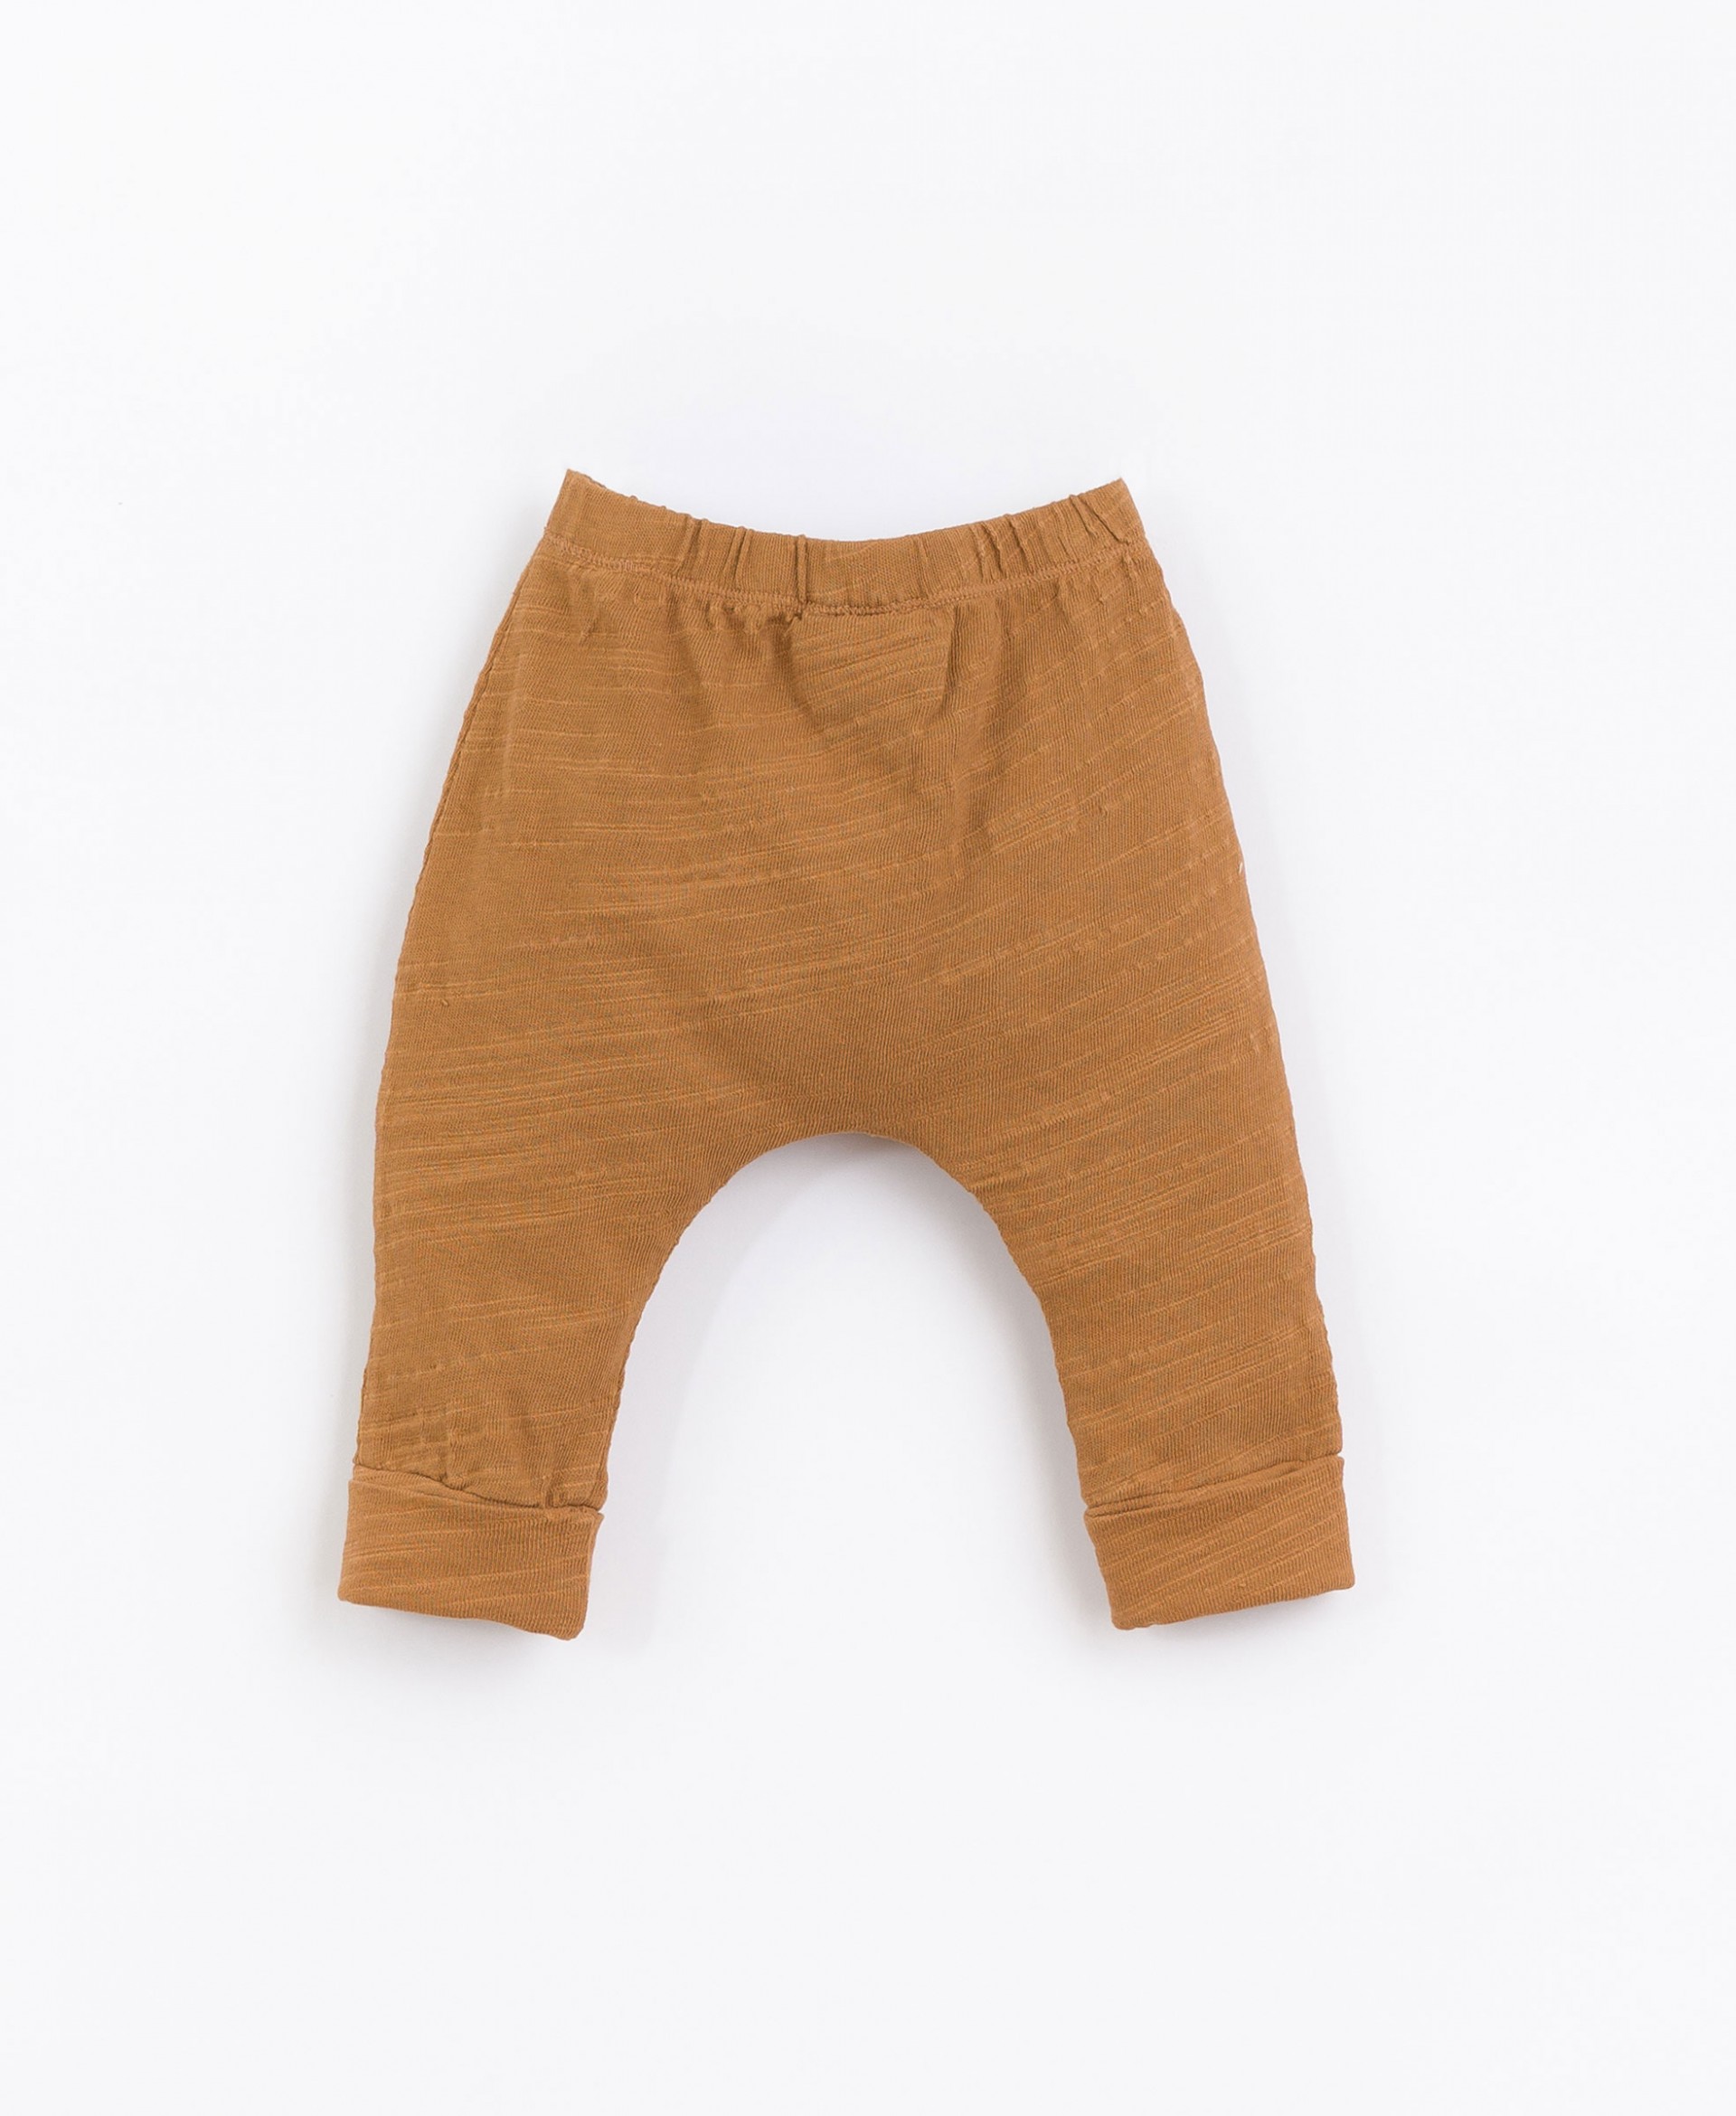 Pantaloni misto cotone biologico e cotone riciclato| Basketry